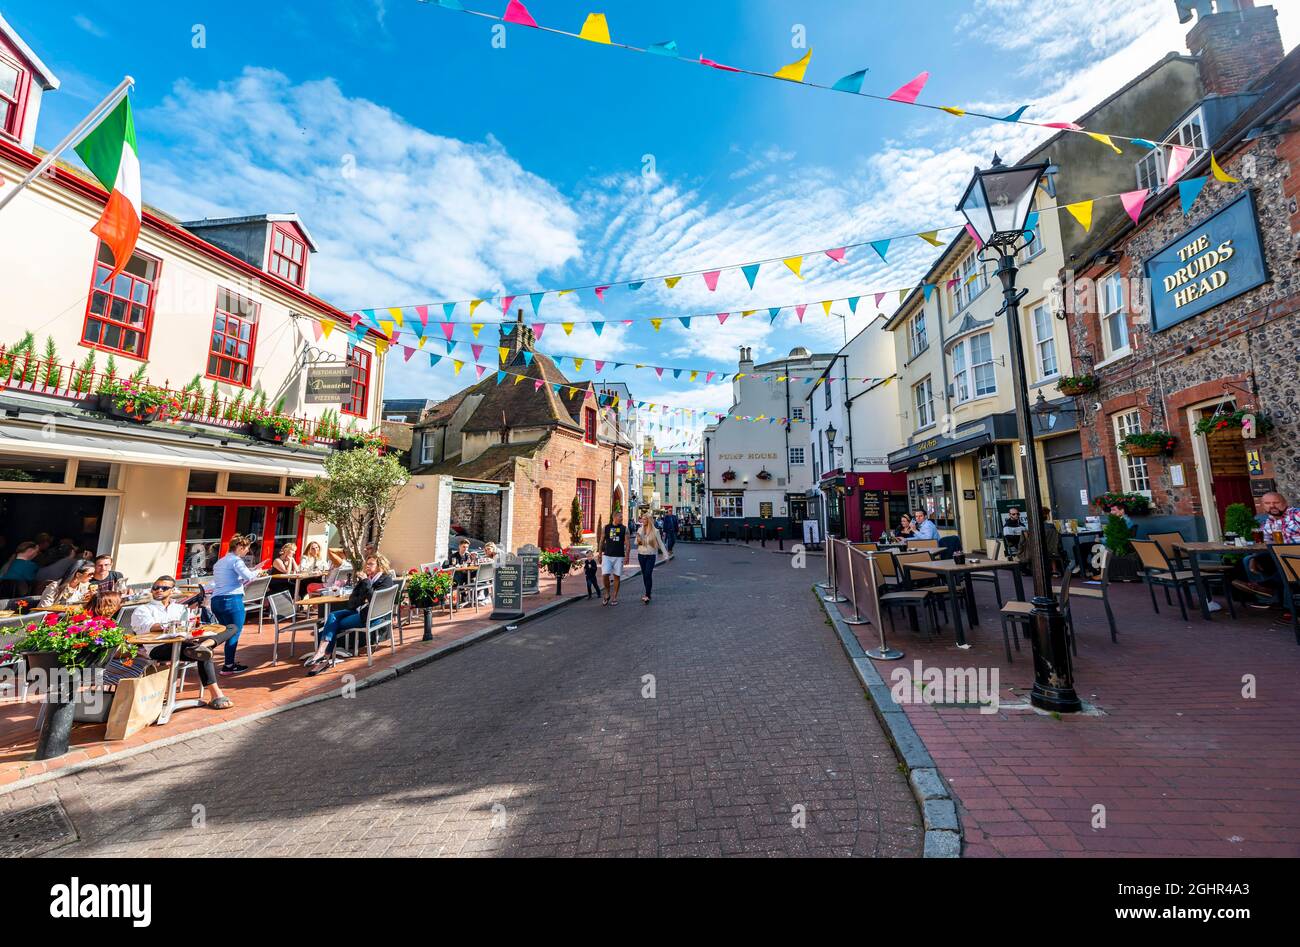 Rue de pubs et restaurants avec drapeaux colorés, Vieille ville, Brighton, East Sussex, Angleterre, Royaume-Uni Banque D'Images